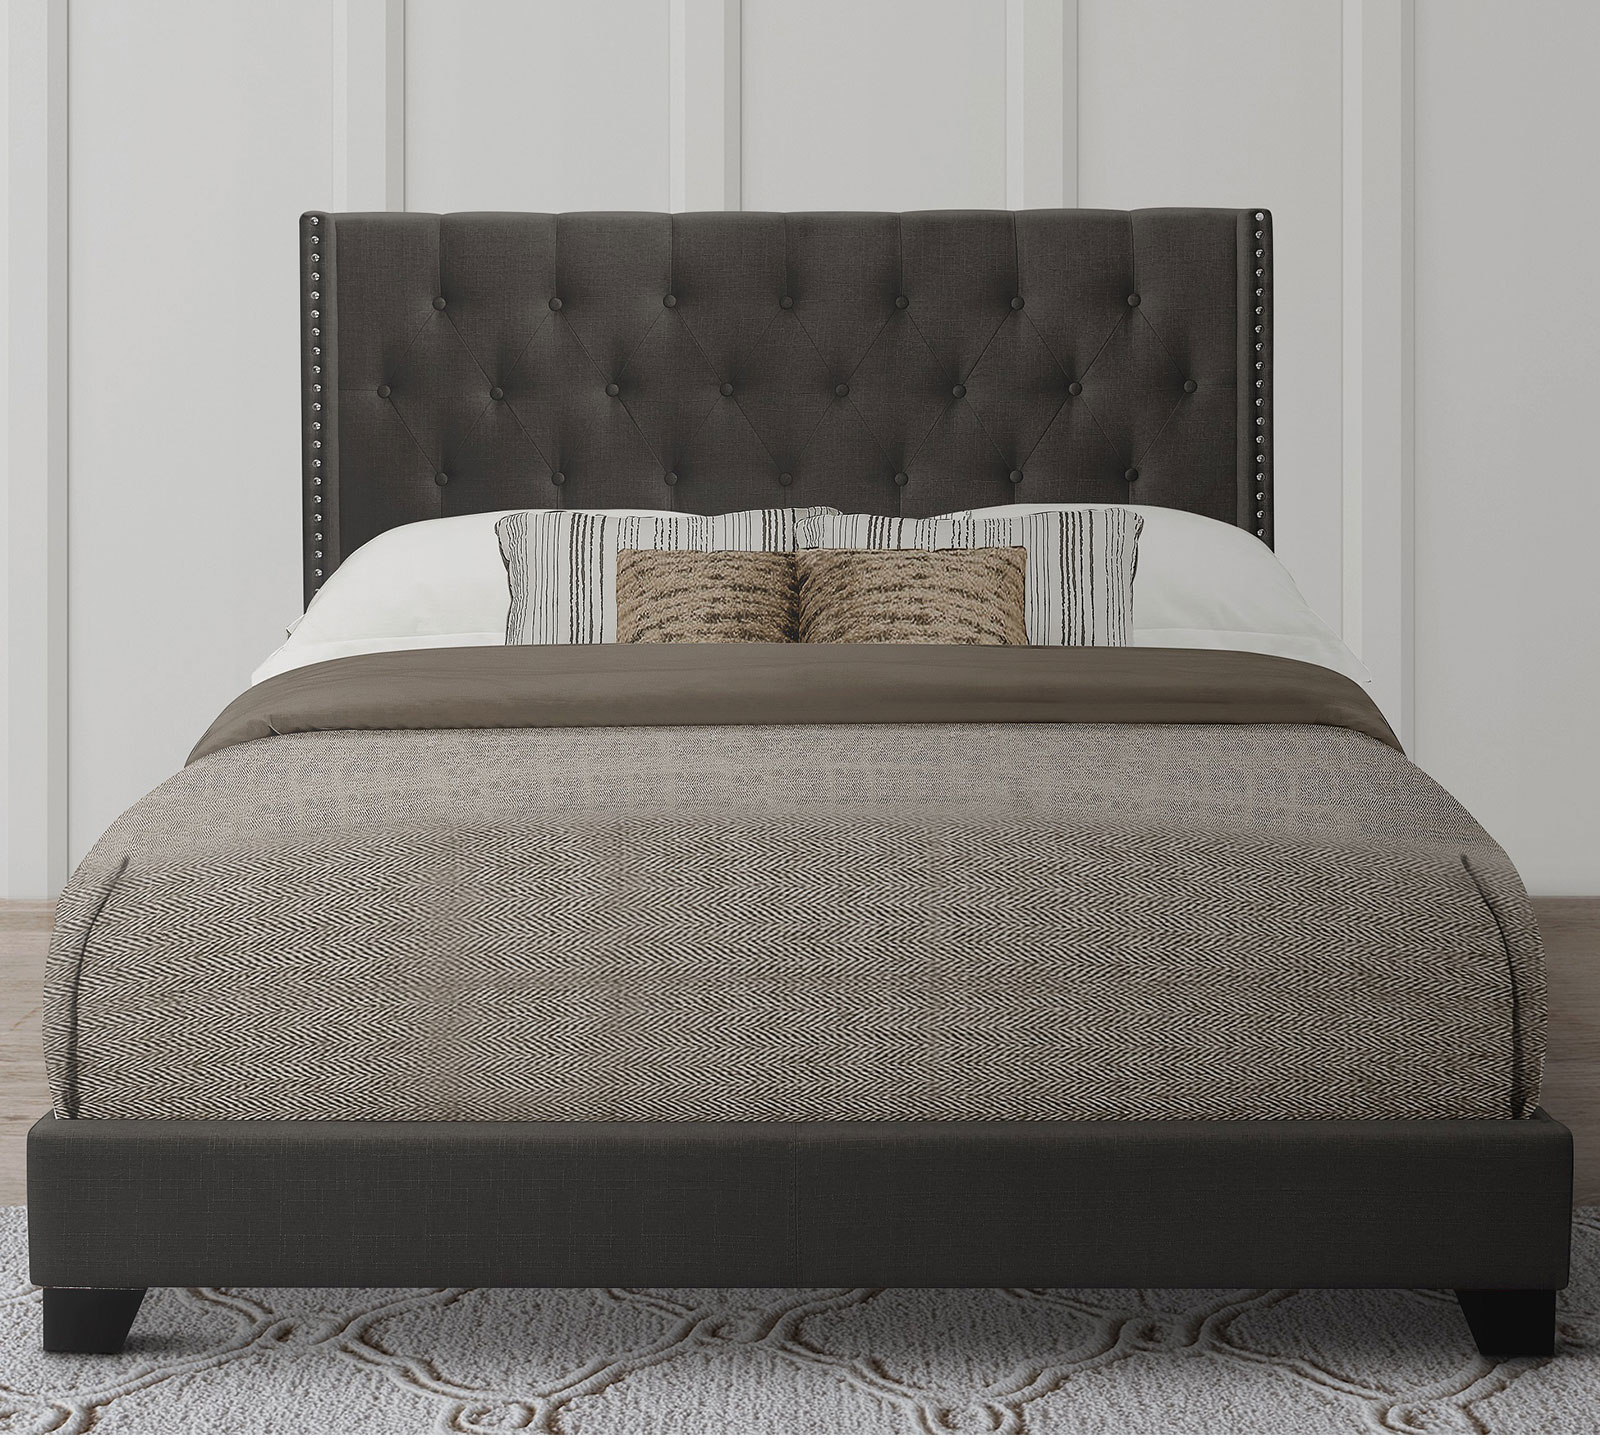 Homelegance Upholstered Bed Set | King | Avery Bed Frame & Headboard | Dark Gray